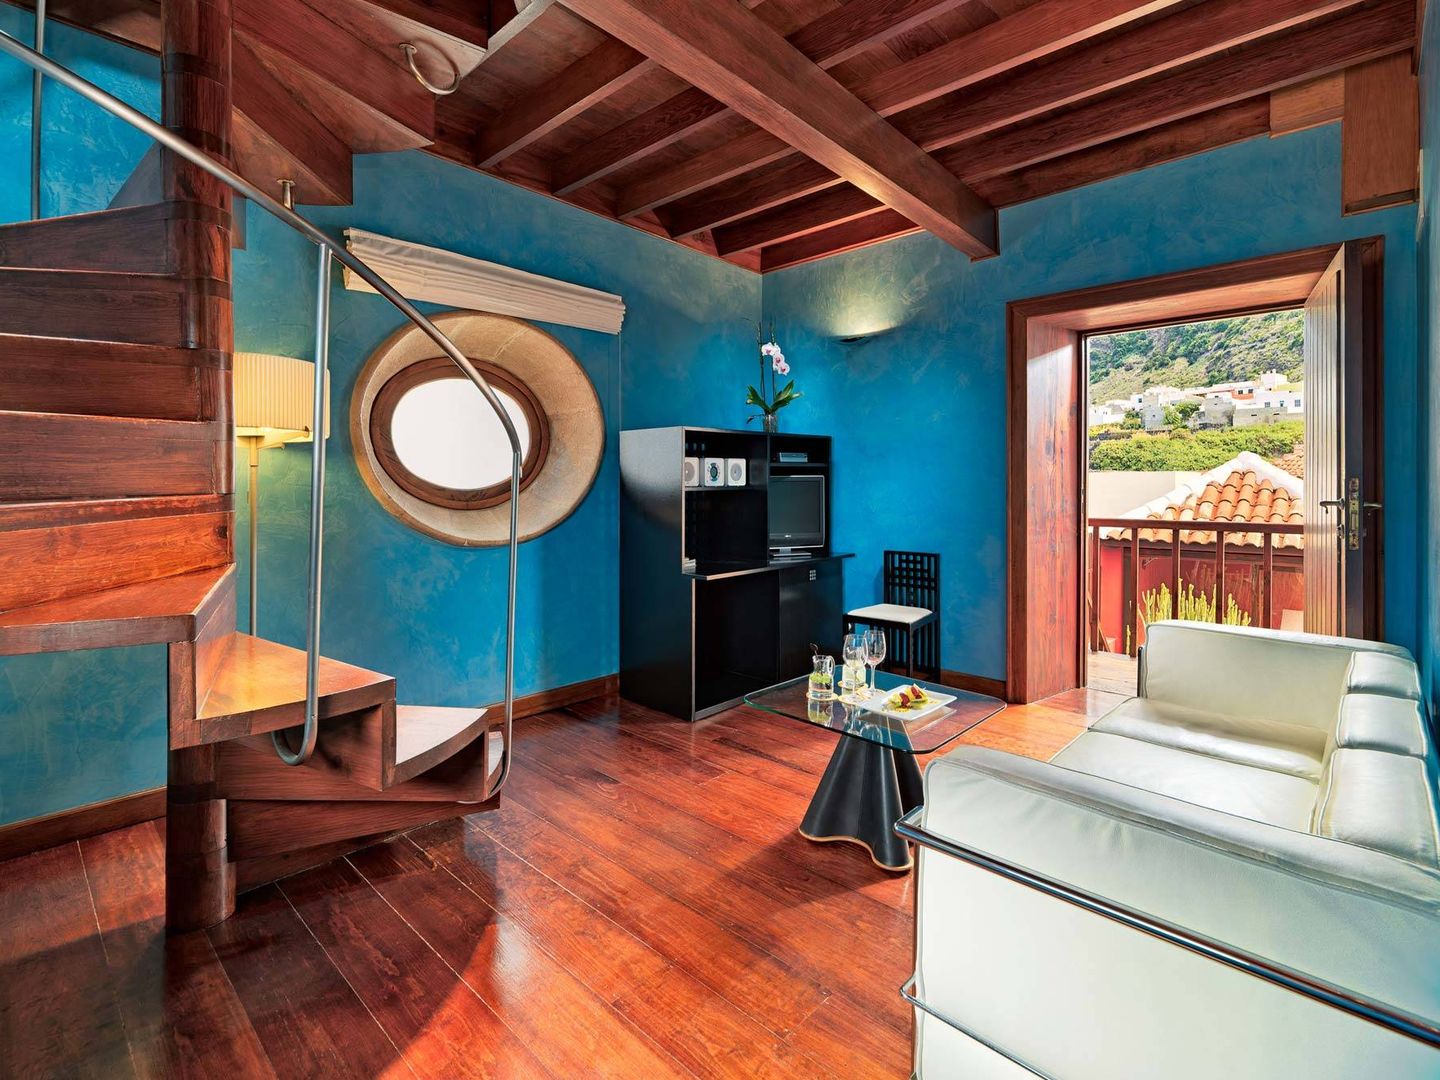 Salón con escritorio inspirado en los diseños de Mackintosh y sofá de Le Corbusier. (Cortesía Hotel San Roque)